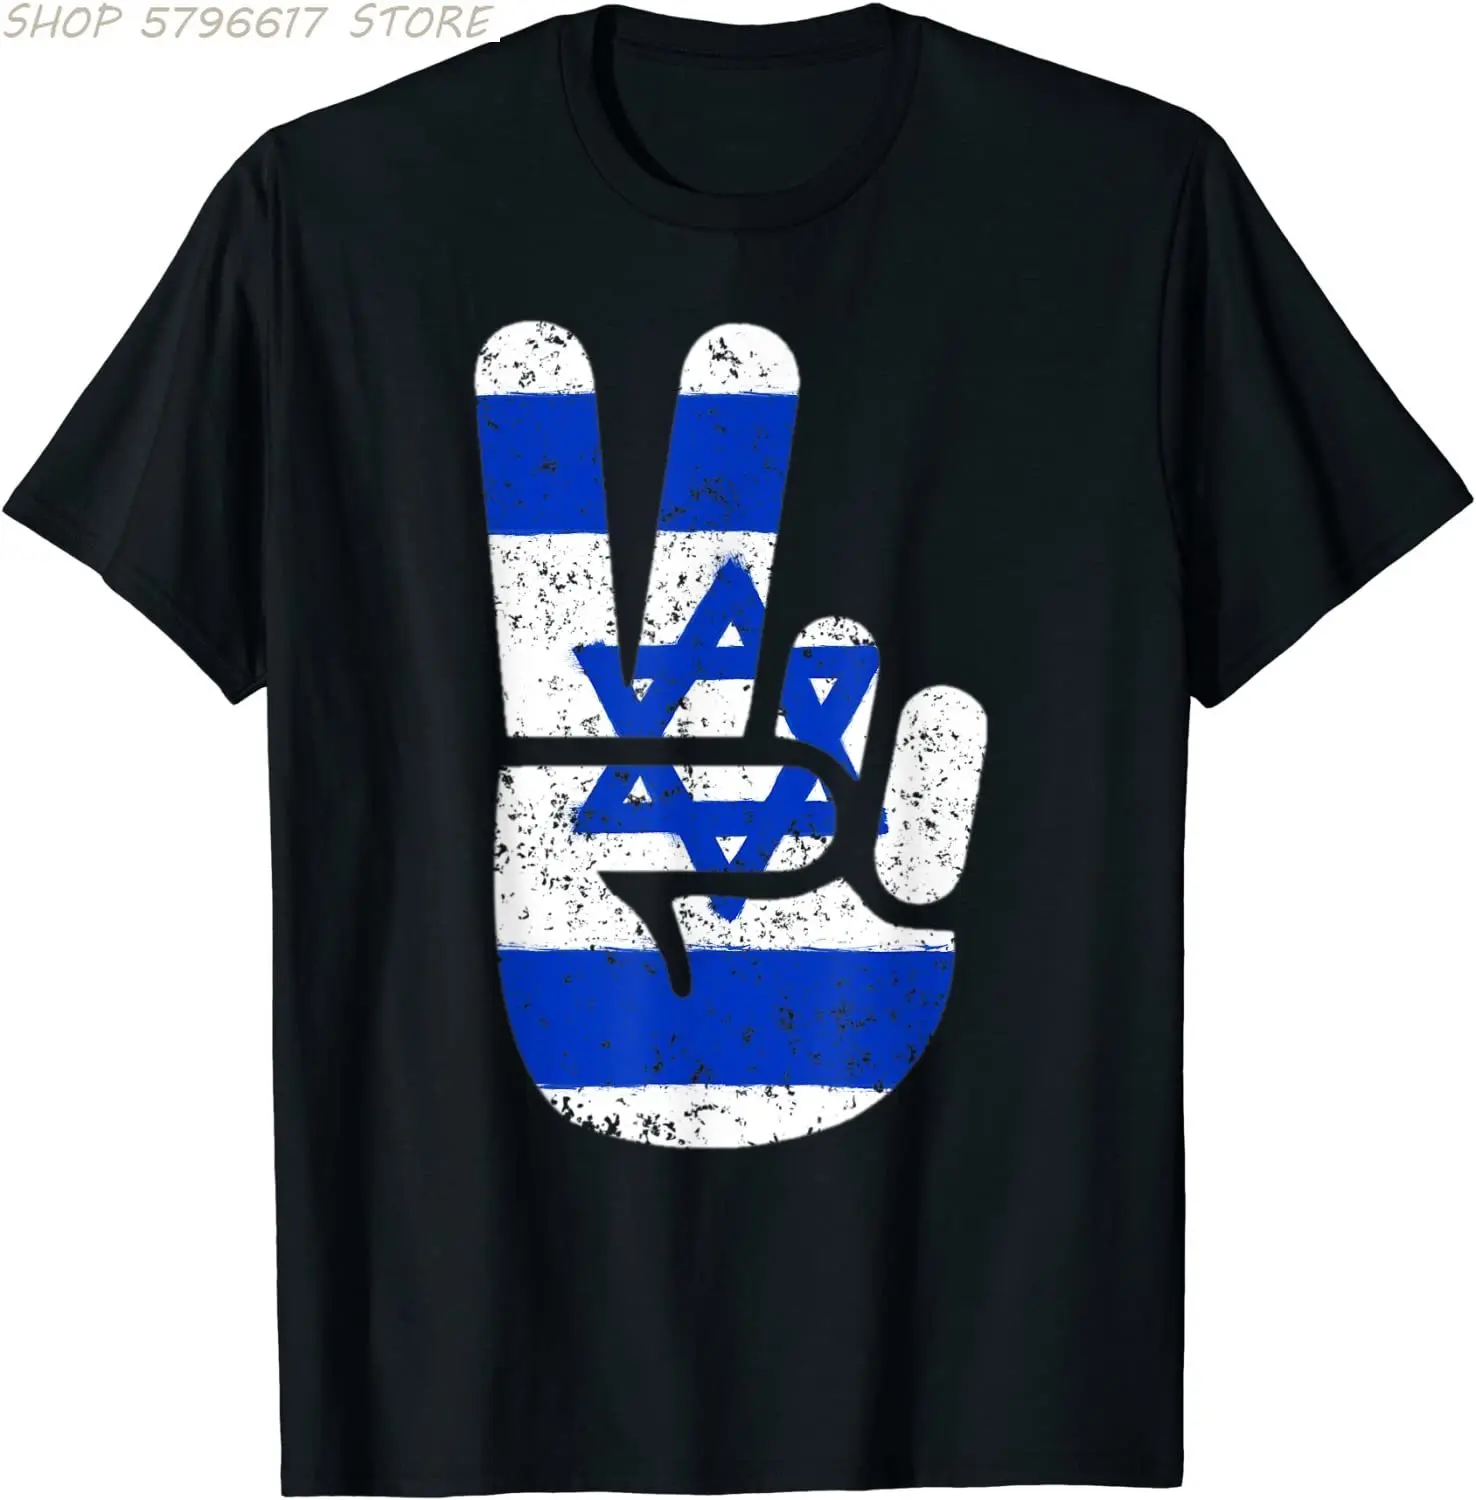 

Крутая футболка с изображением флага Израиля и символа большого мира